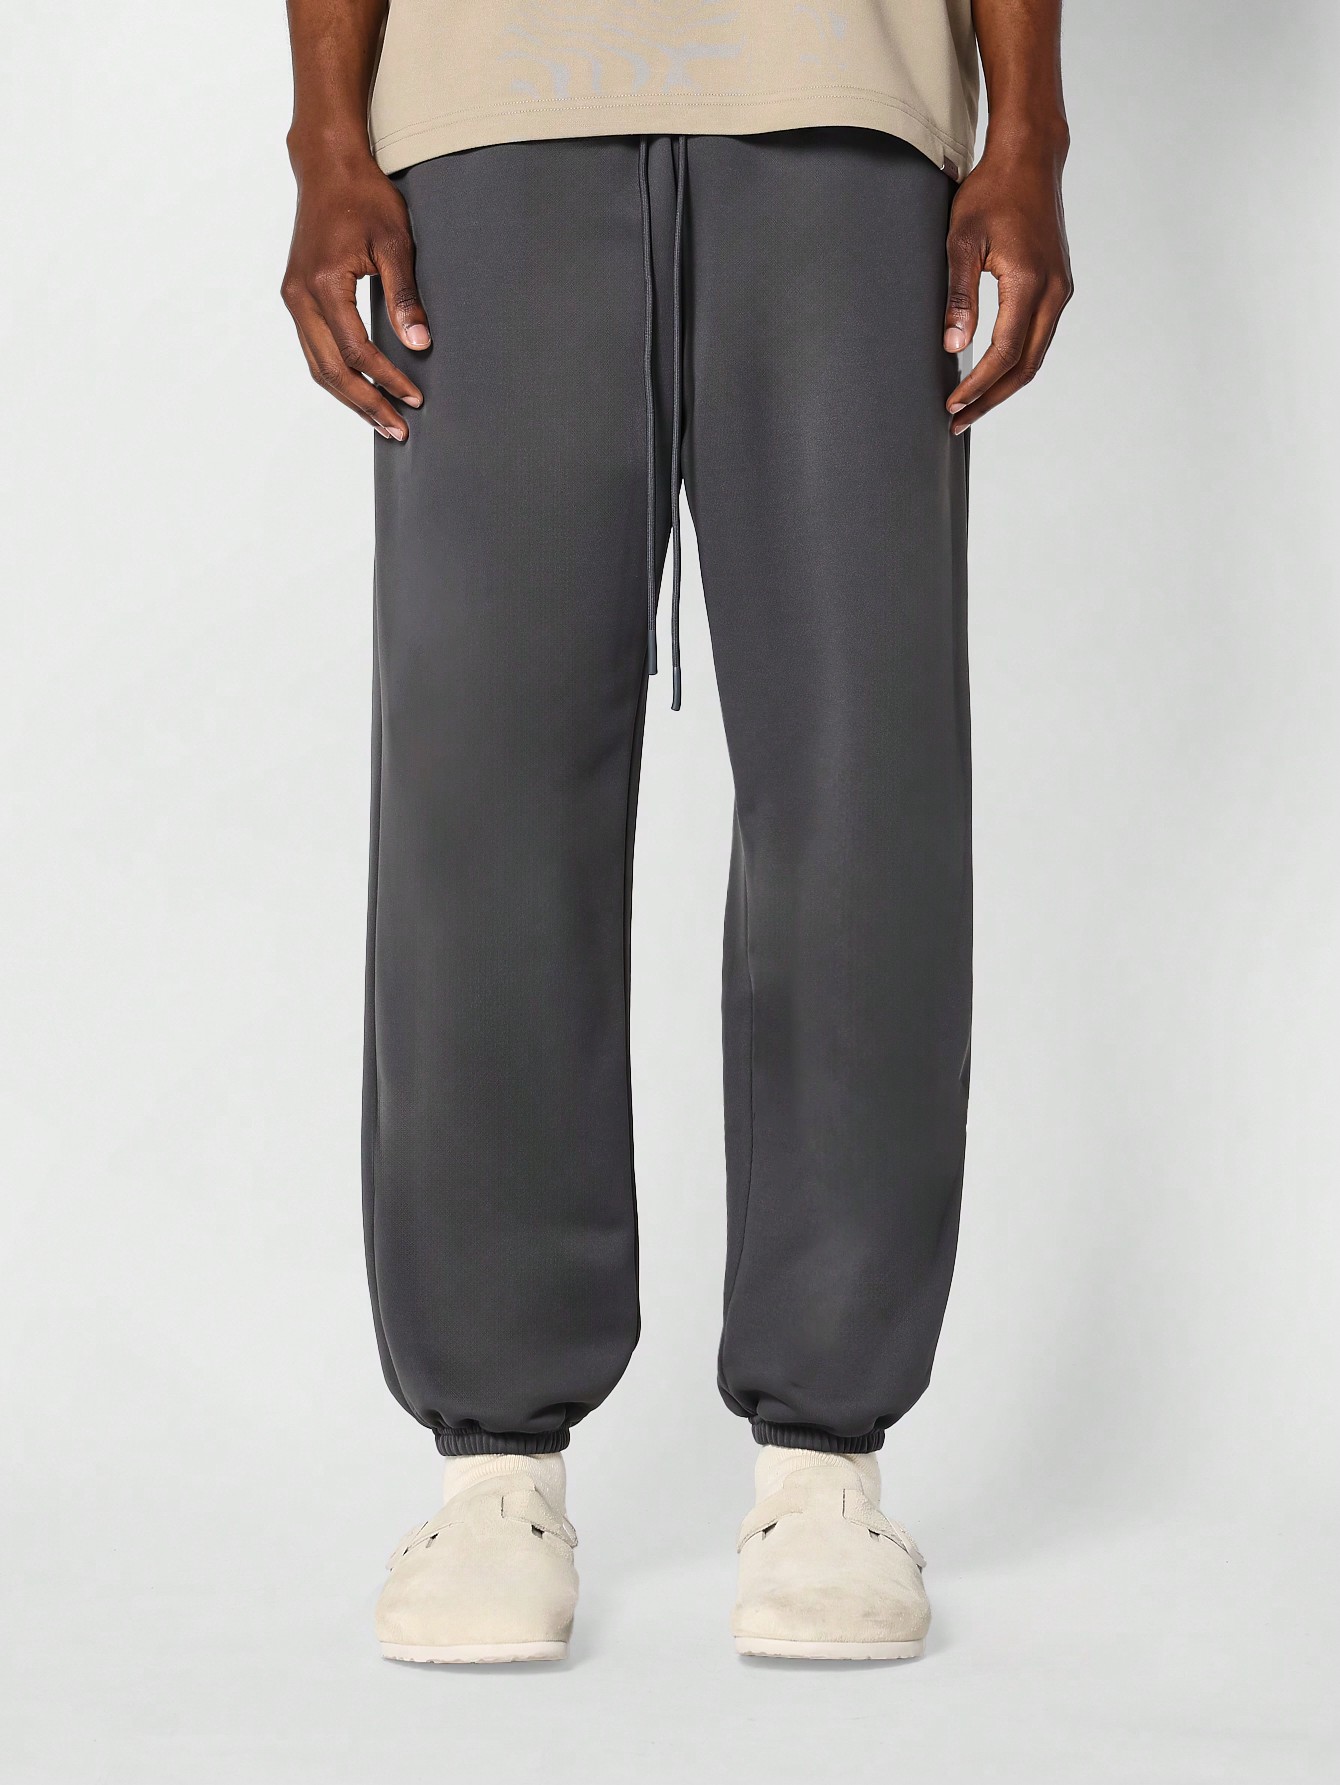 Летние спортивные штаны премиум-класса SUMWON 90s Essential, темно-серый